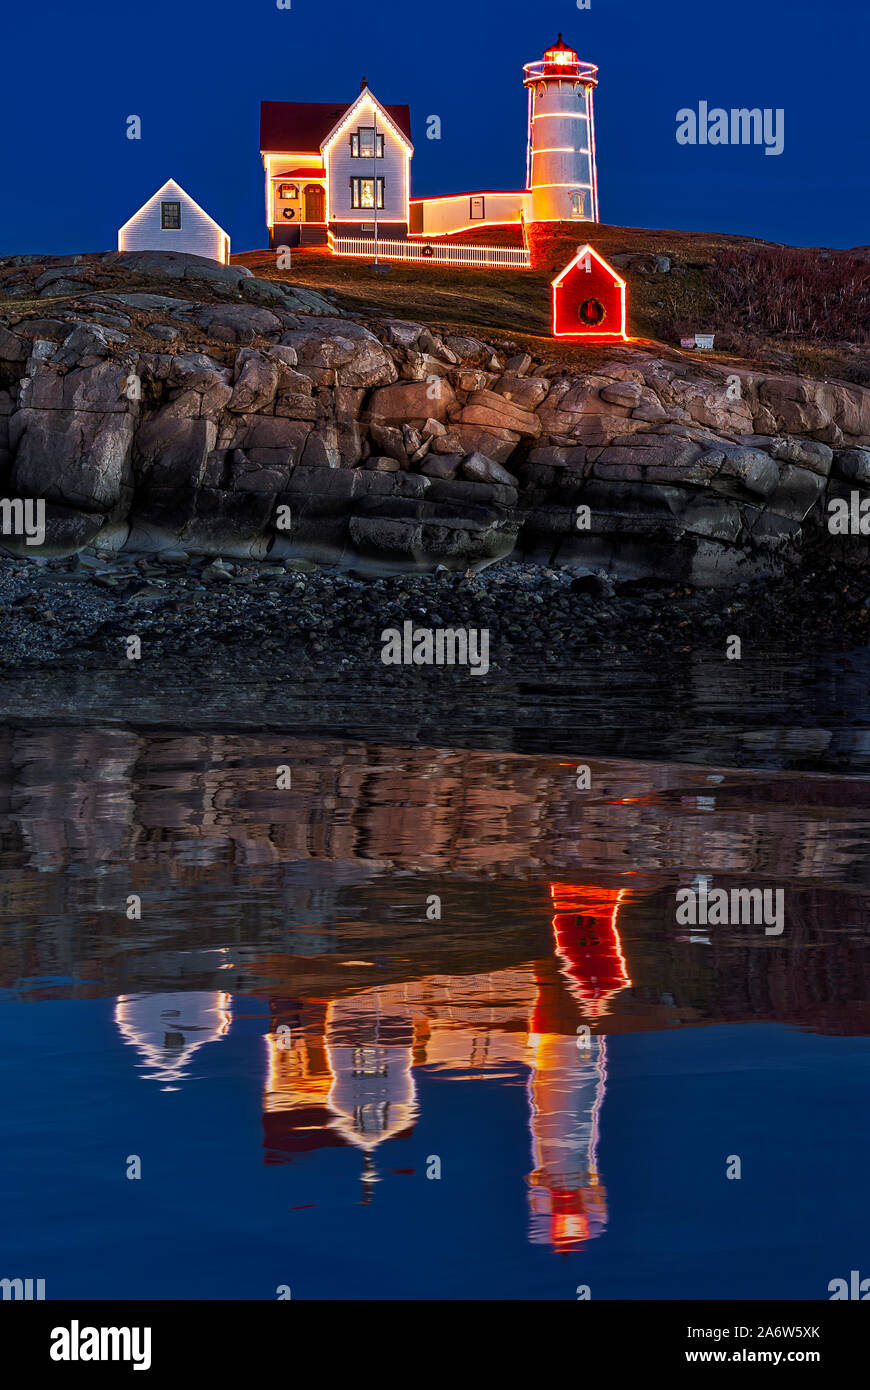 Nuble Leuchtturm Reflexion - Blaue Stunde bei Sofort startbereit Leuchtturm am Kap Nedick in York, Maine gelegen. Stockfoto